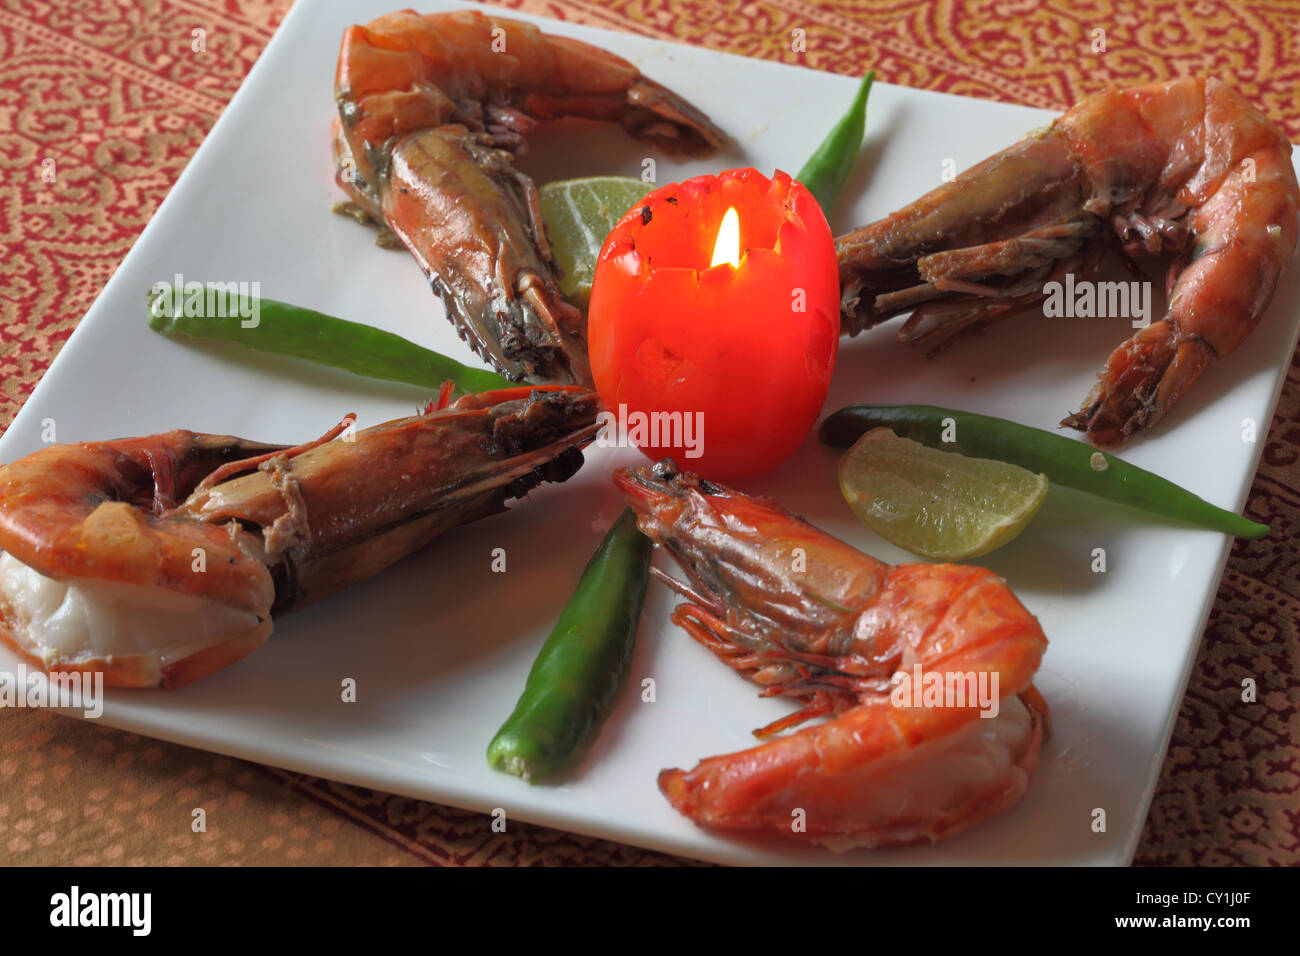 Gebratene Garnele ist eine tiefe gebratenen Küche in Kerala sowie Restaurants weltweit beliebt. Dies ist Kerala Stil würzige Garnelen anbraten. Stockfoto